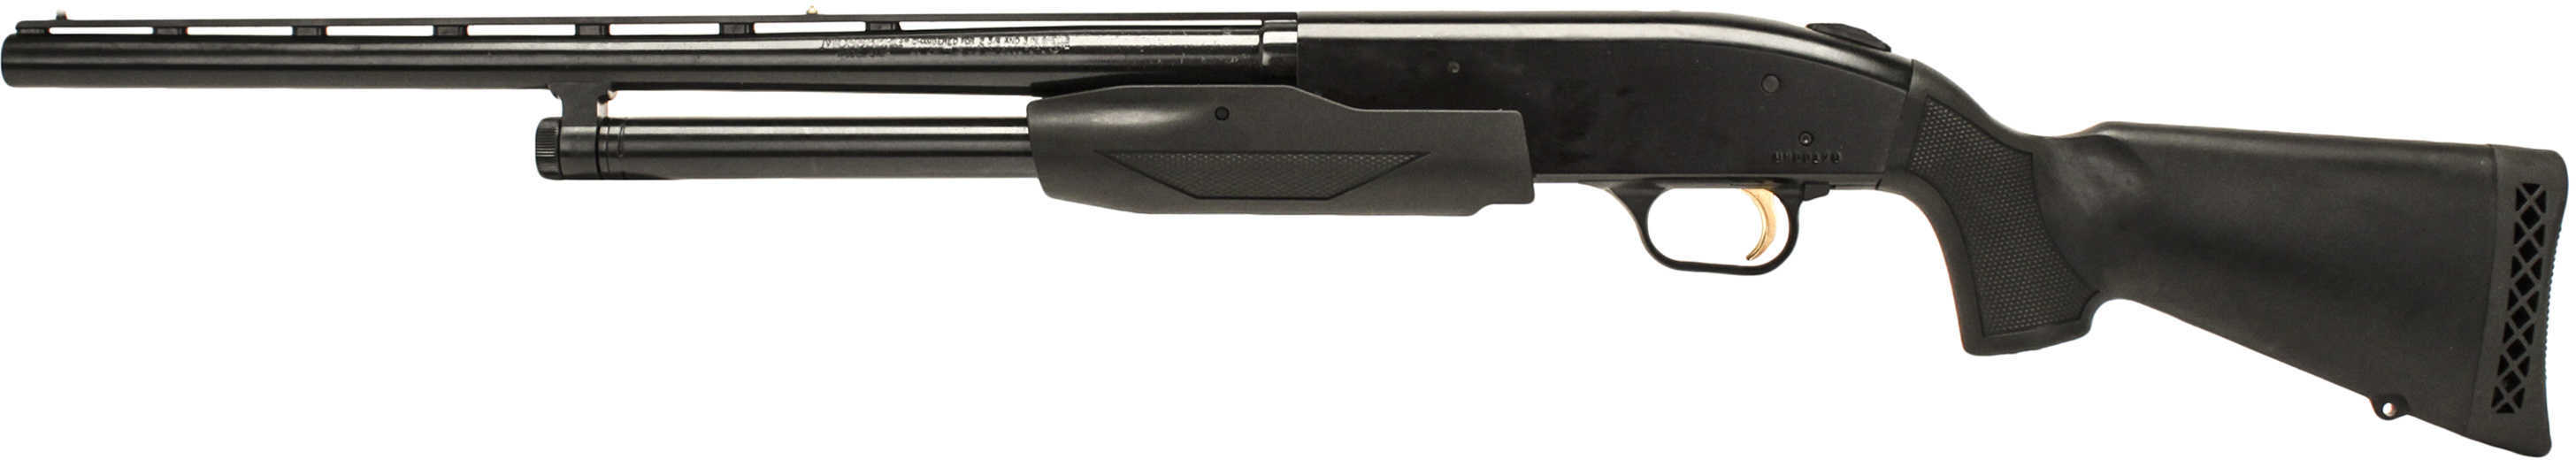 Mossberg 510 Mini Tactical Shotgun 20 Gauge 18.5" Vent Rib Barrel Synthetic Stock